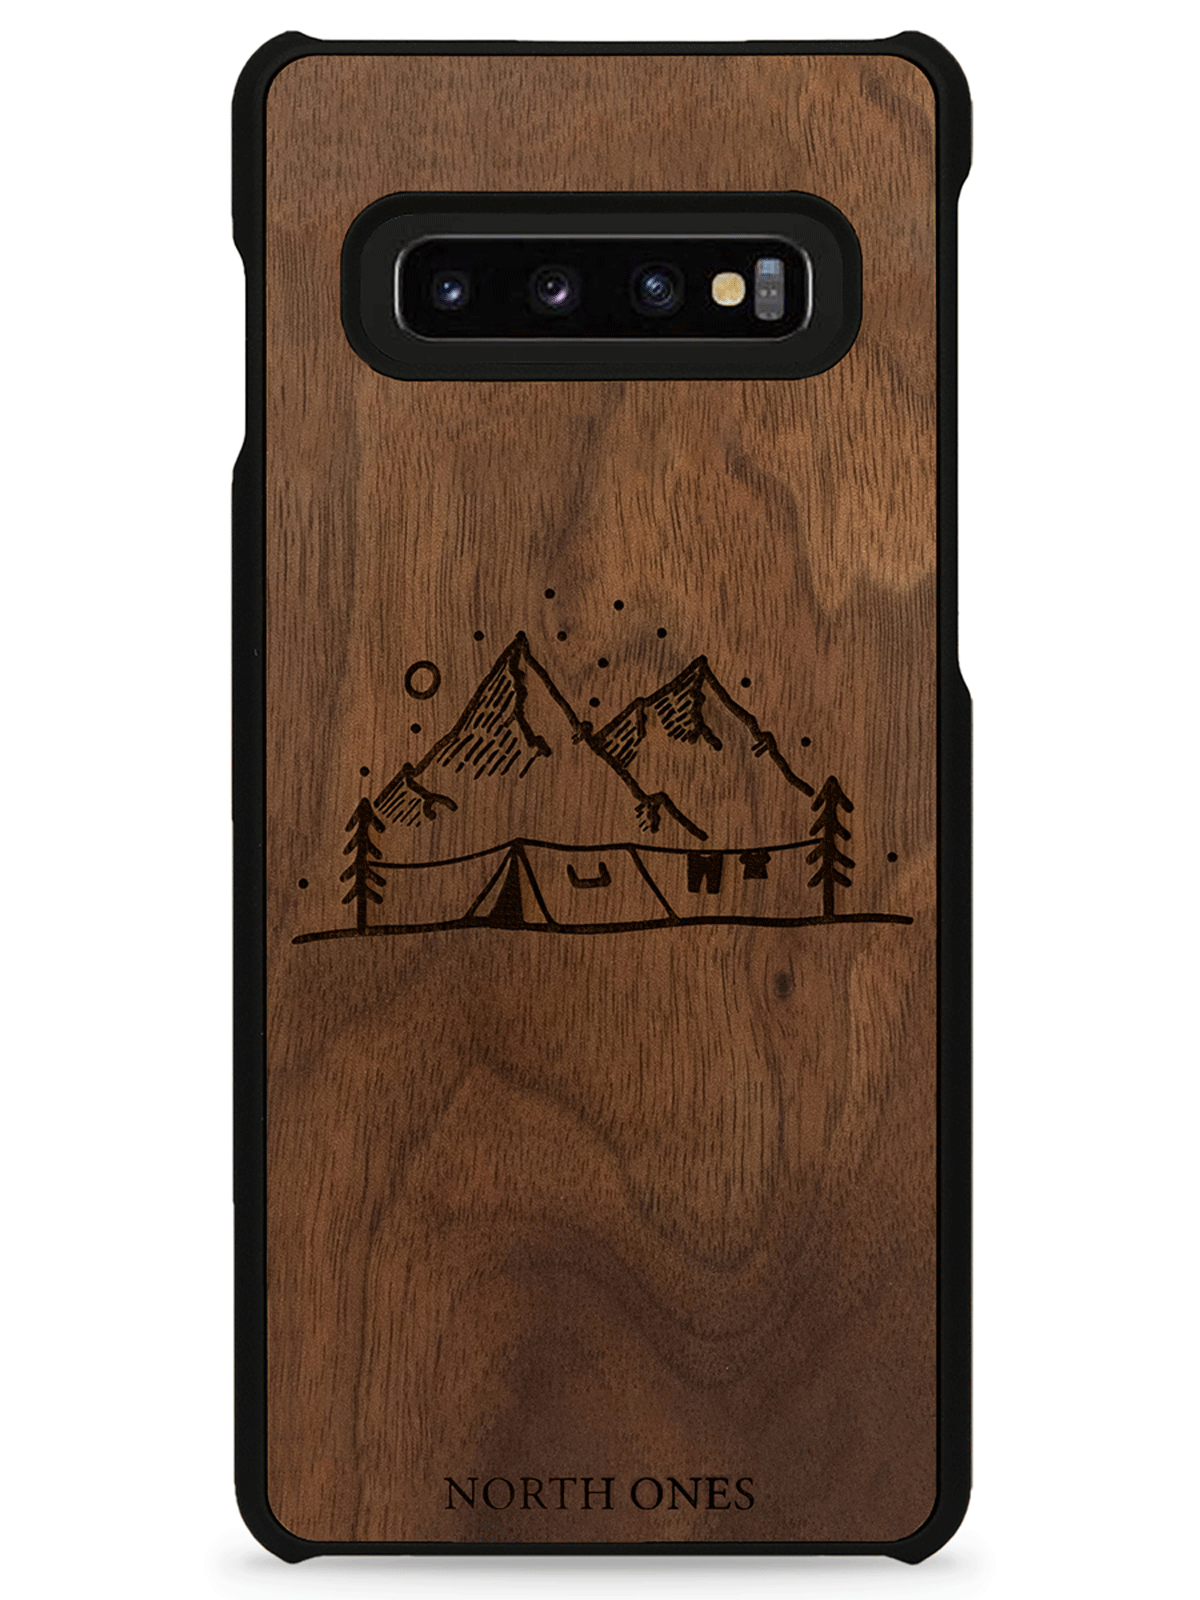 Mobilskal trä vildmark walnut inivildmarken edition Samsung galaxy S10